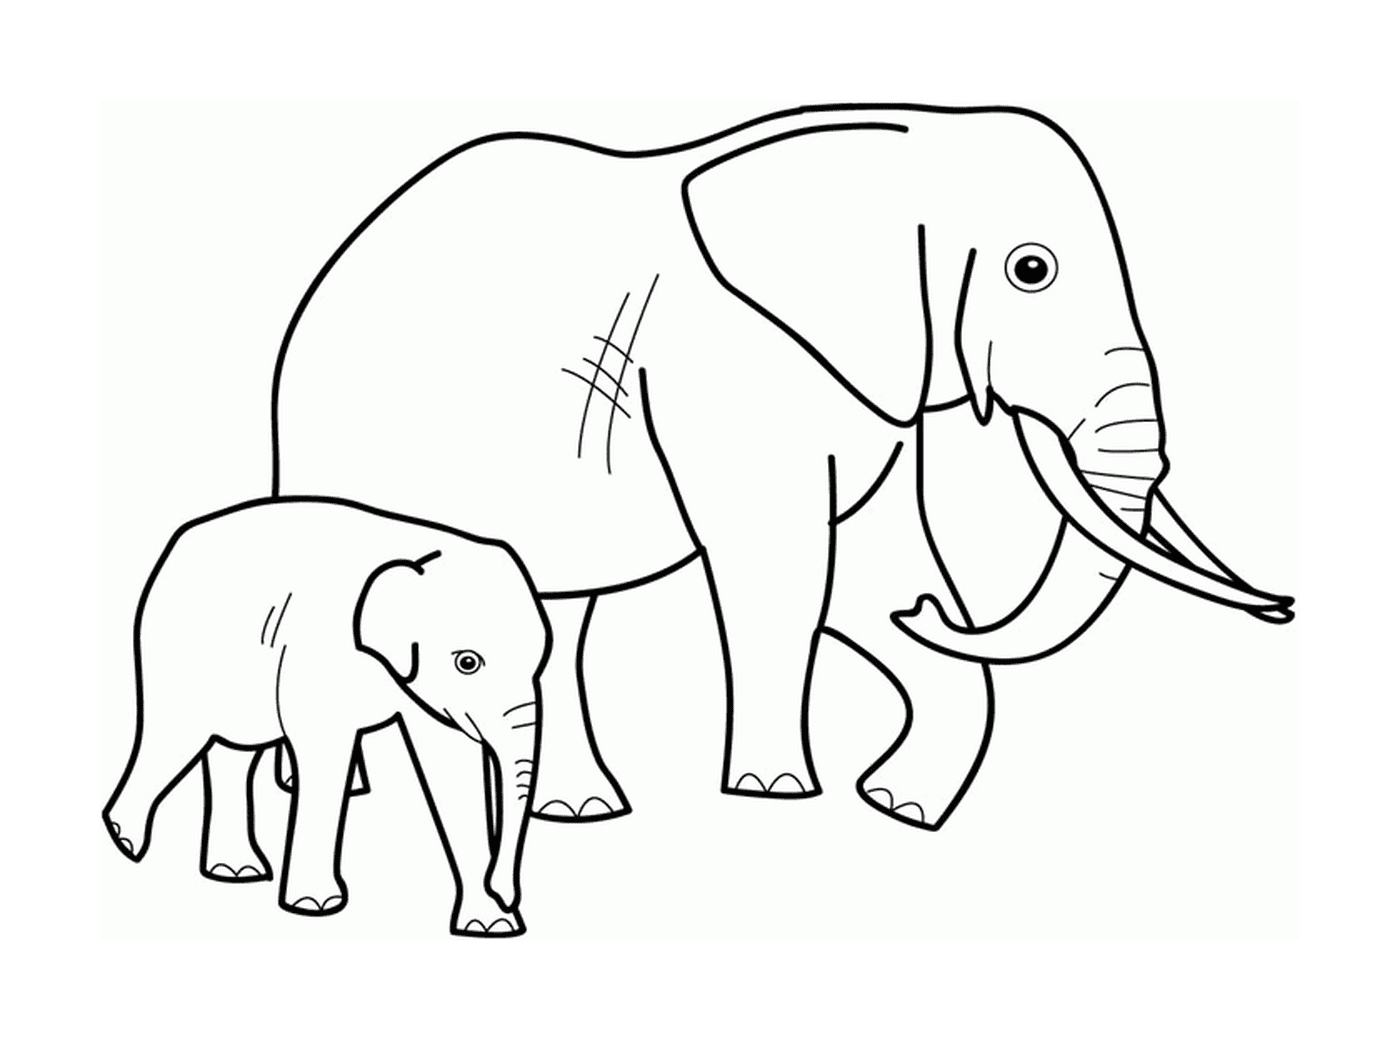  Um elefante adulto e um elefante ao lado um do outro 